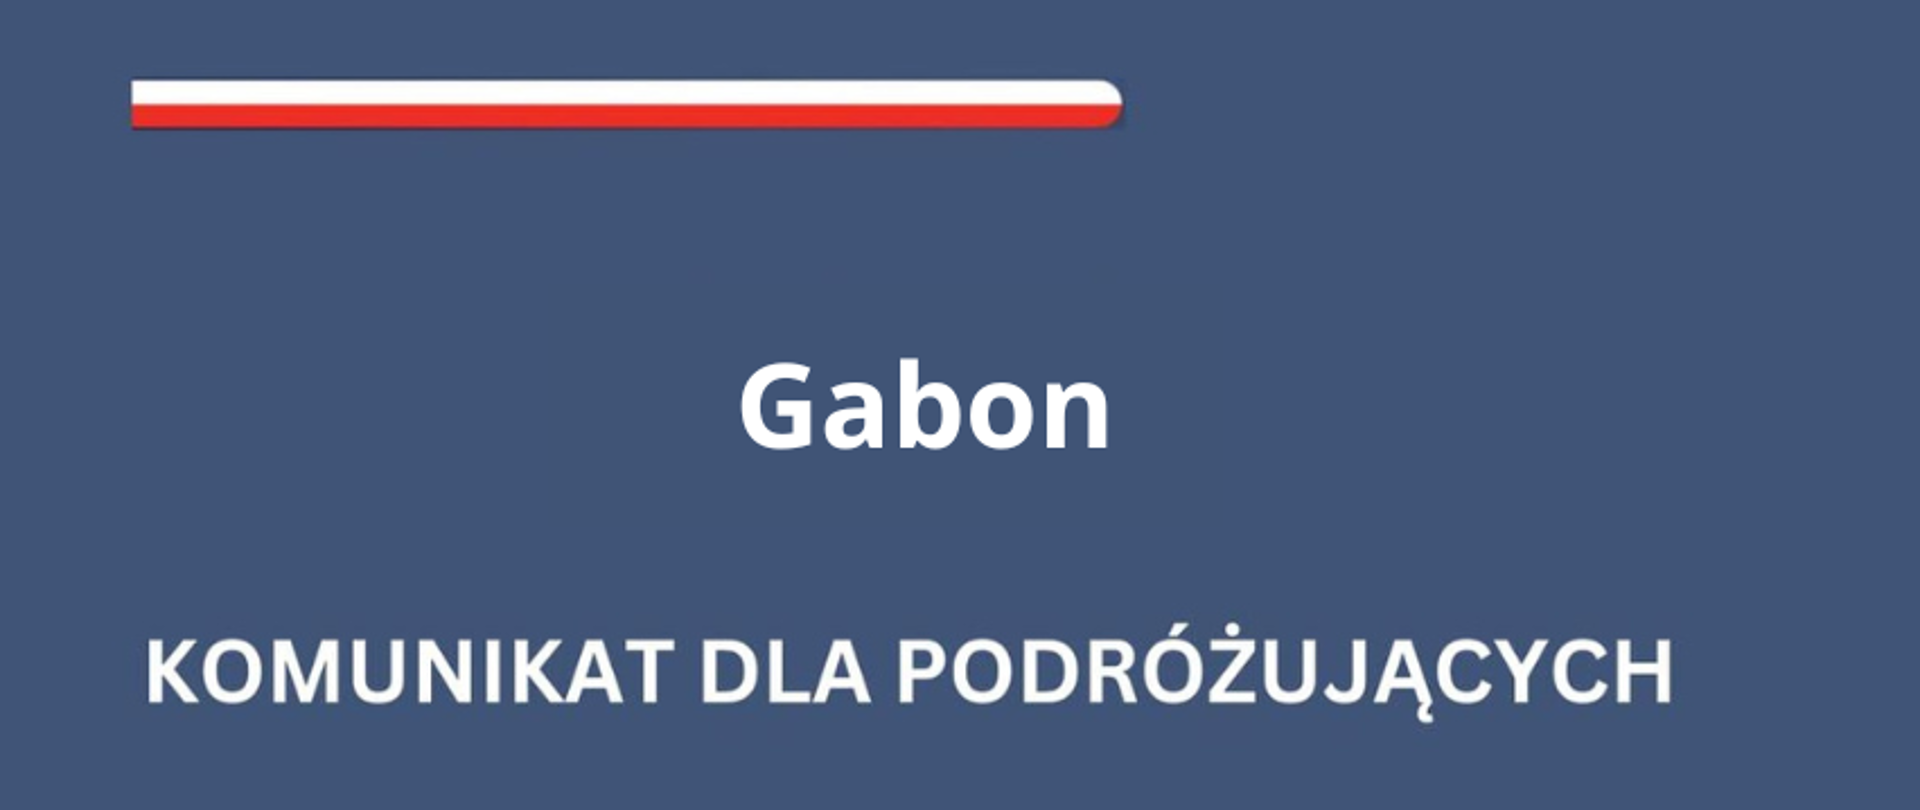 Gabon - komunikat dla podróżujących 